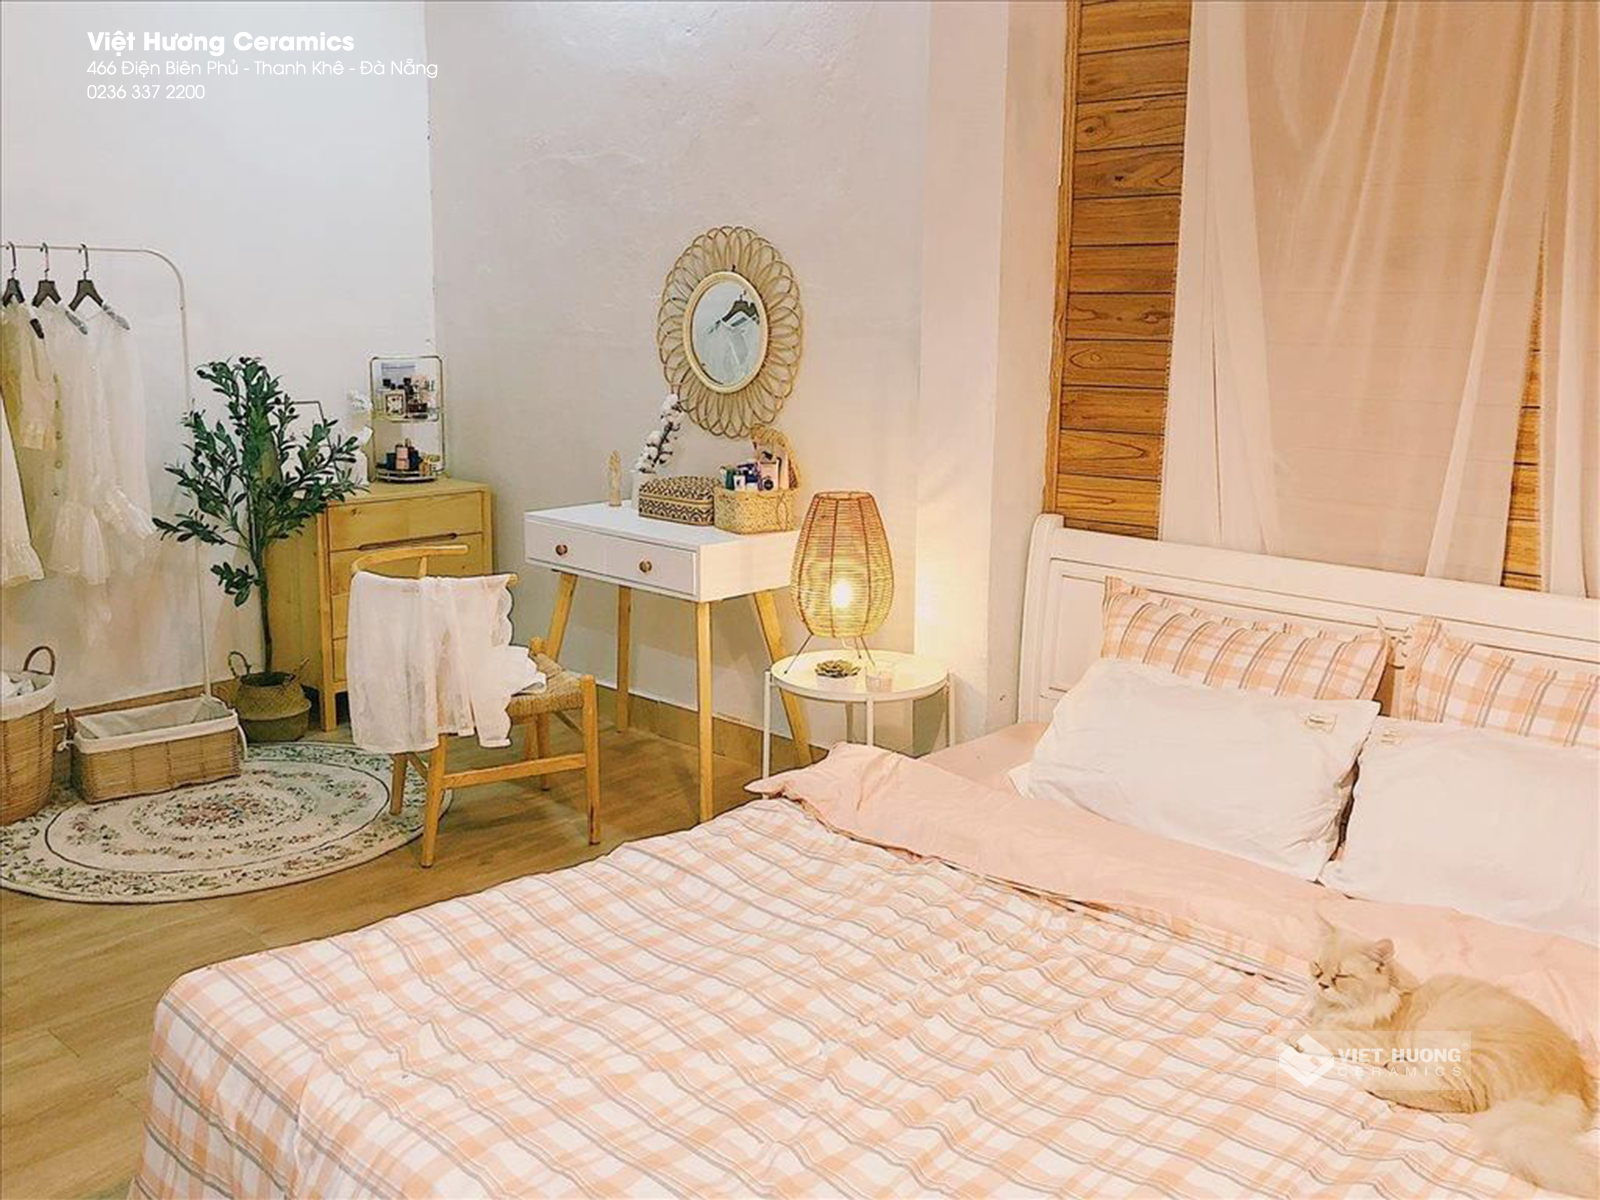 Phong cách Hàn Quốc cho phòng ngủ không chỉ mang lại vẻ đẹp hiện đại, mà còn mang đến một không gian dễ chịu và thư giãn. Kiểu dáng đơn giản của giường và tủ quần áo kết hợp với các mẫu trang trí dịu mắt sẽ tạo thành một phòng ngủ tuyệt vời.